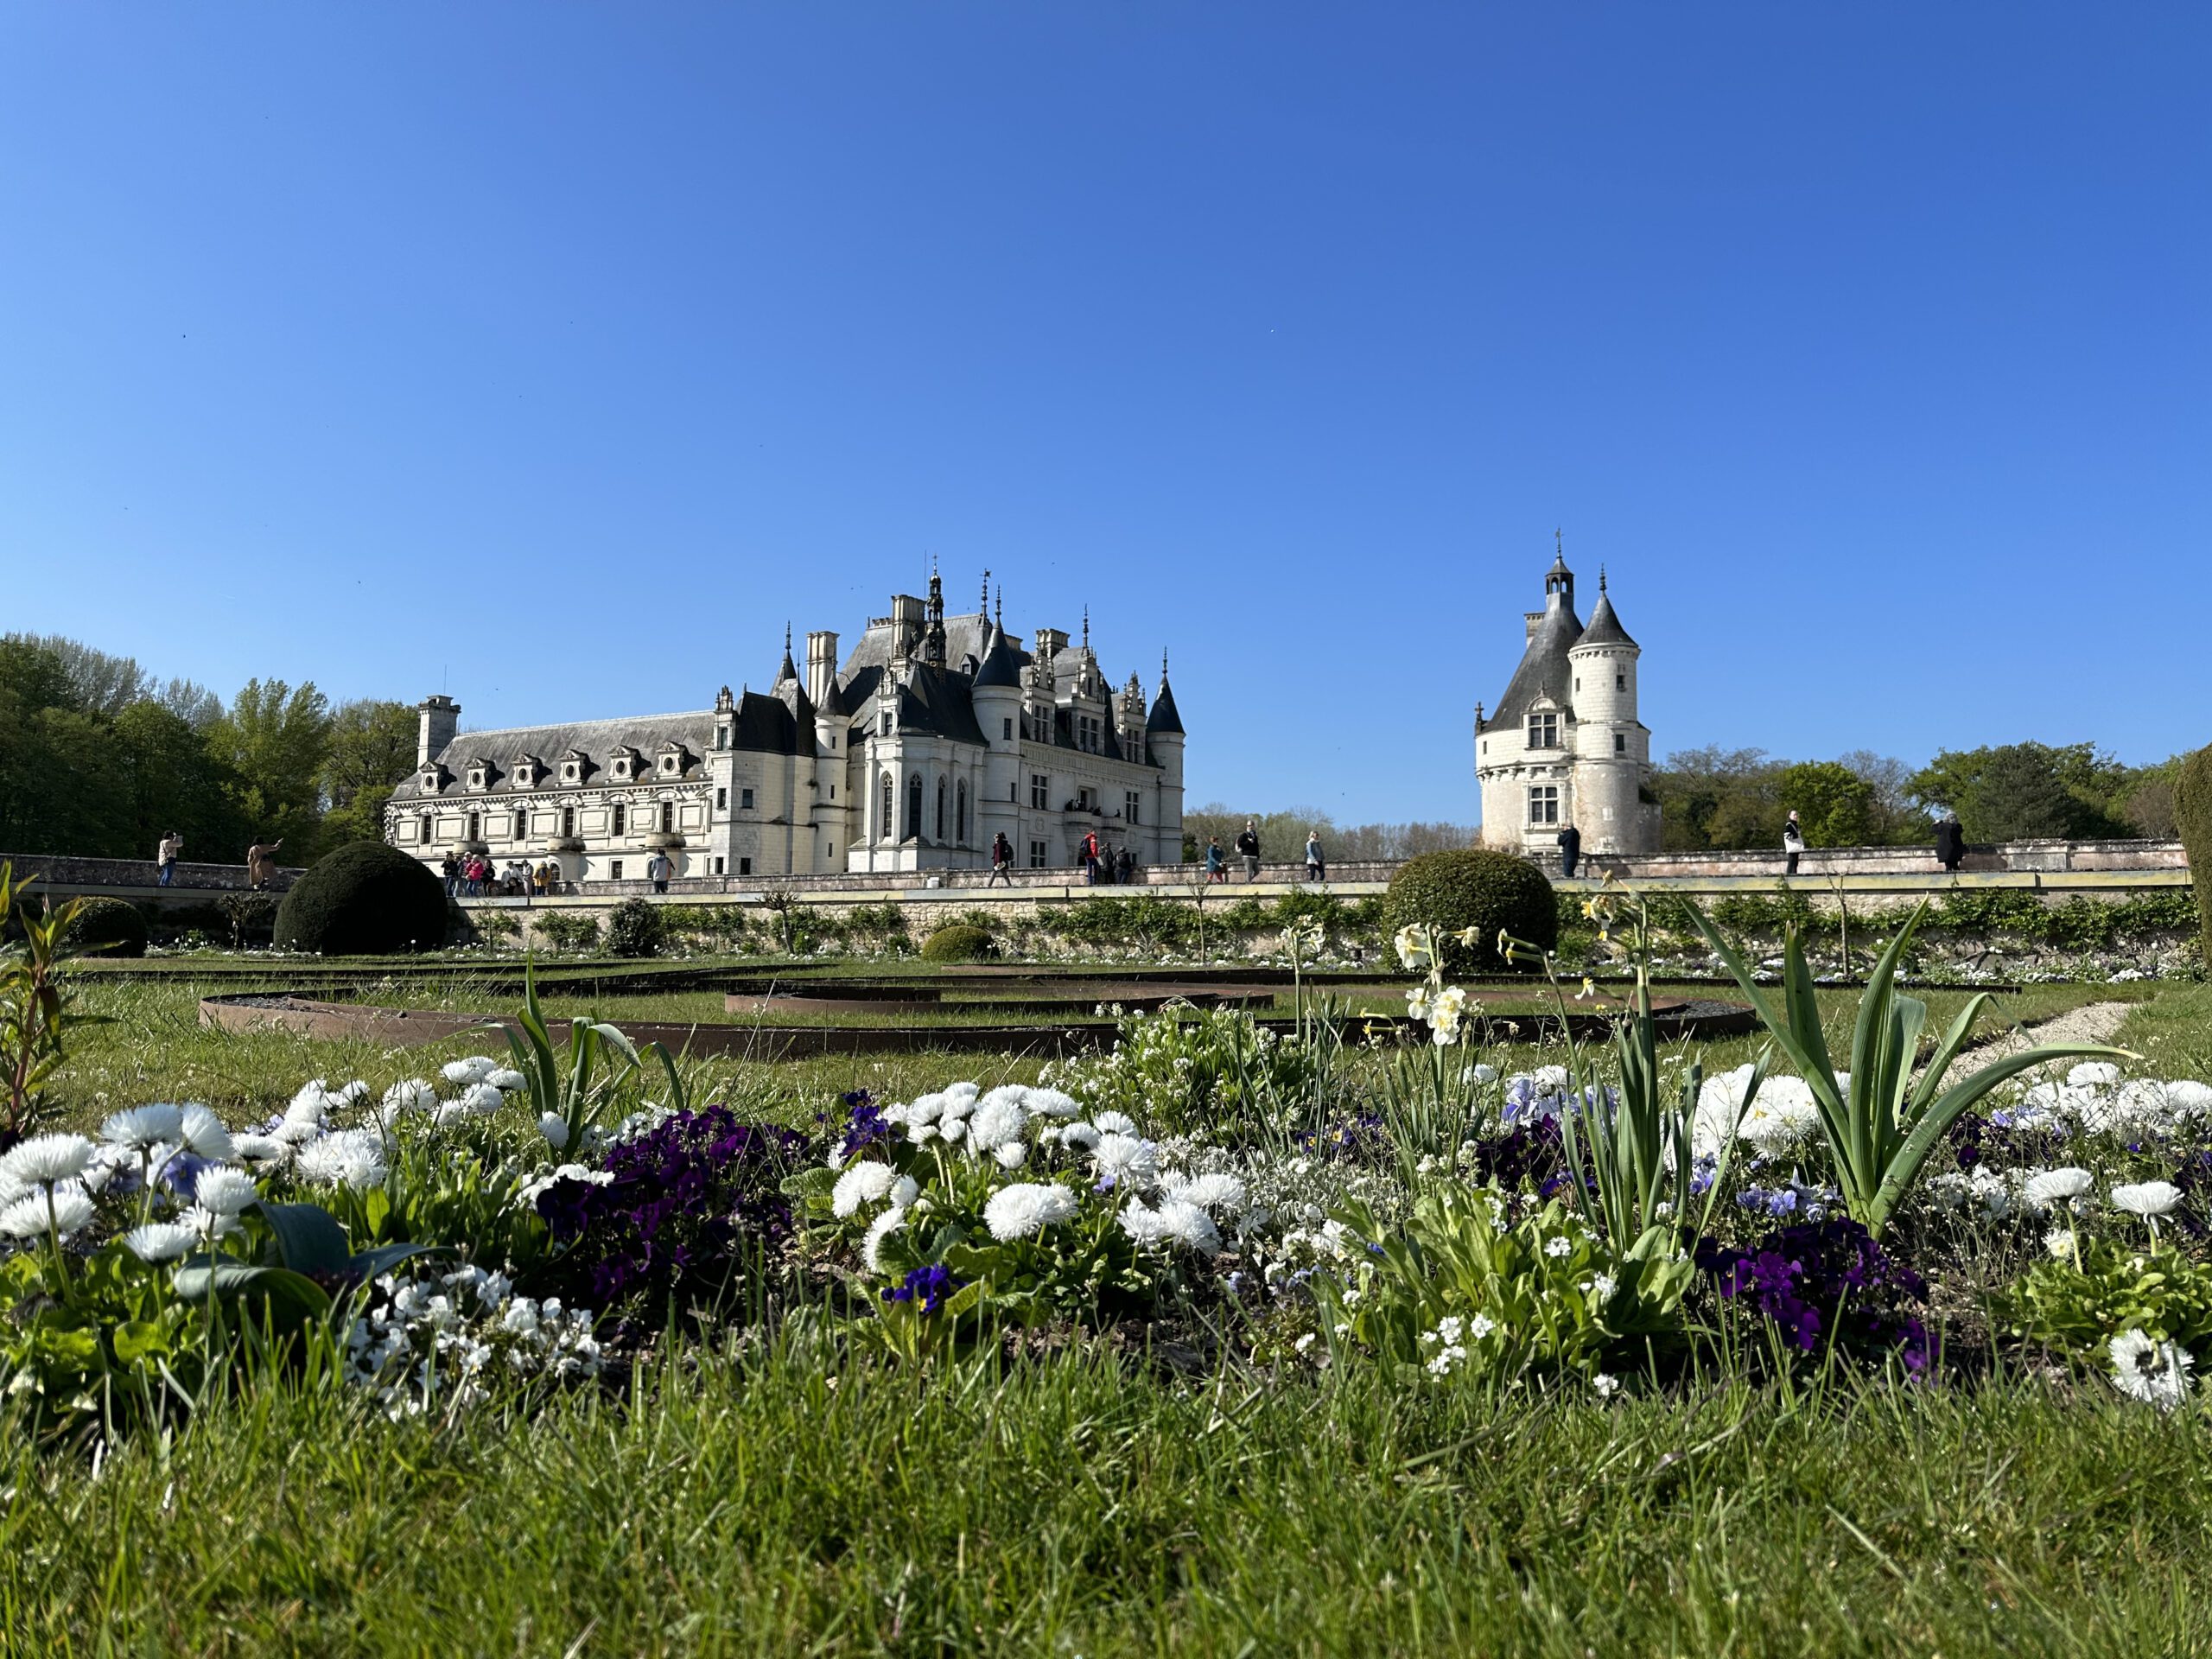 Château de Chenonceau and its garden